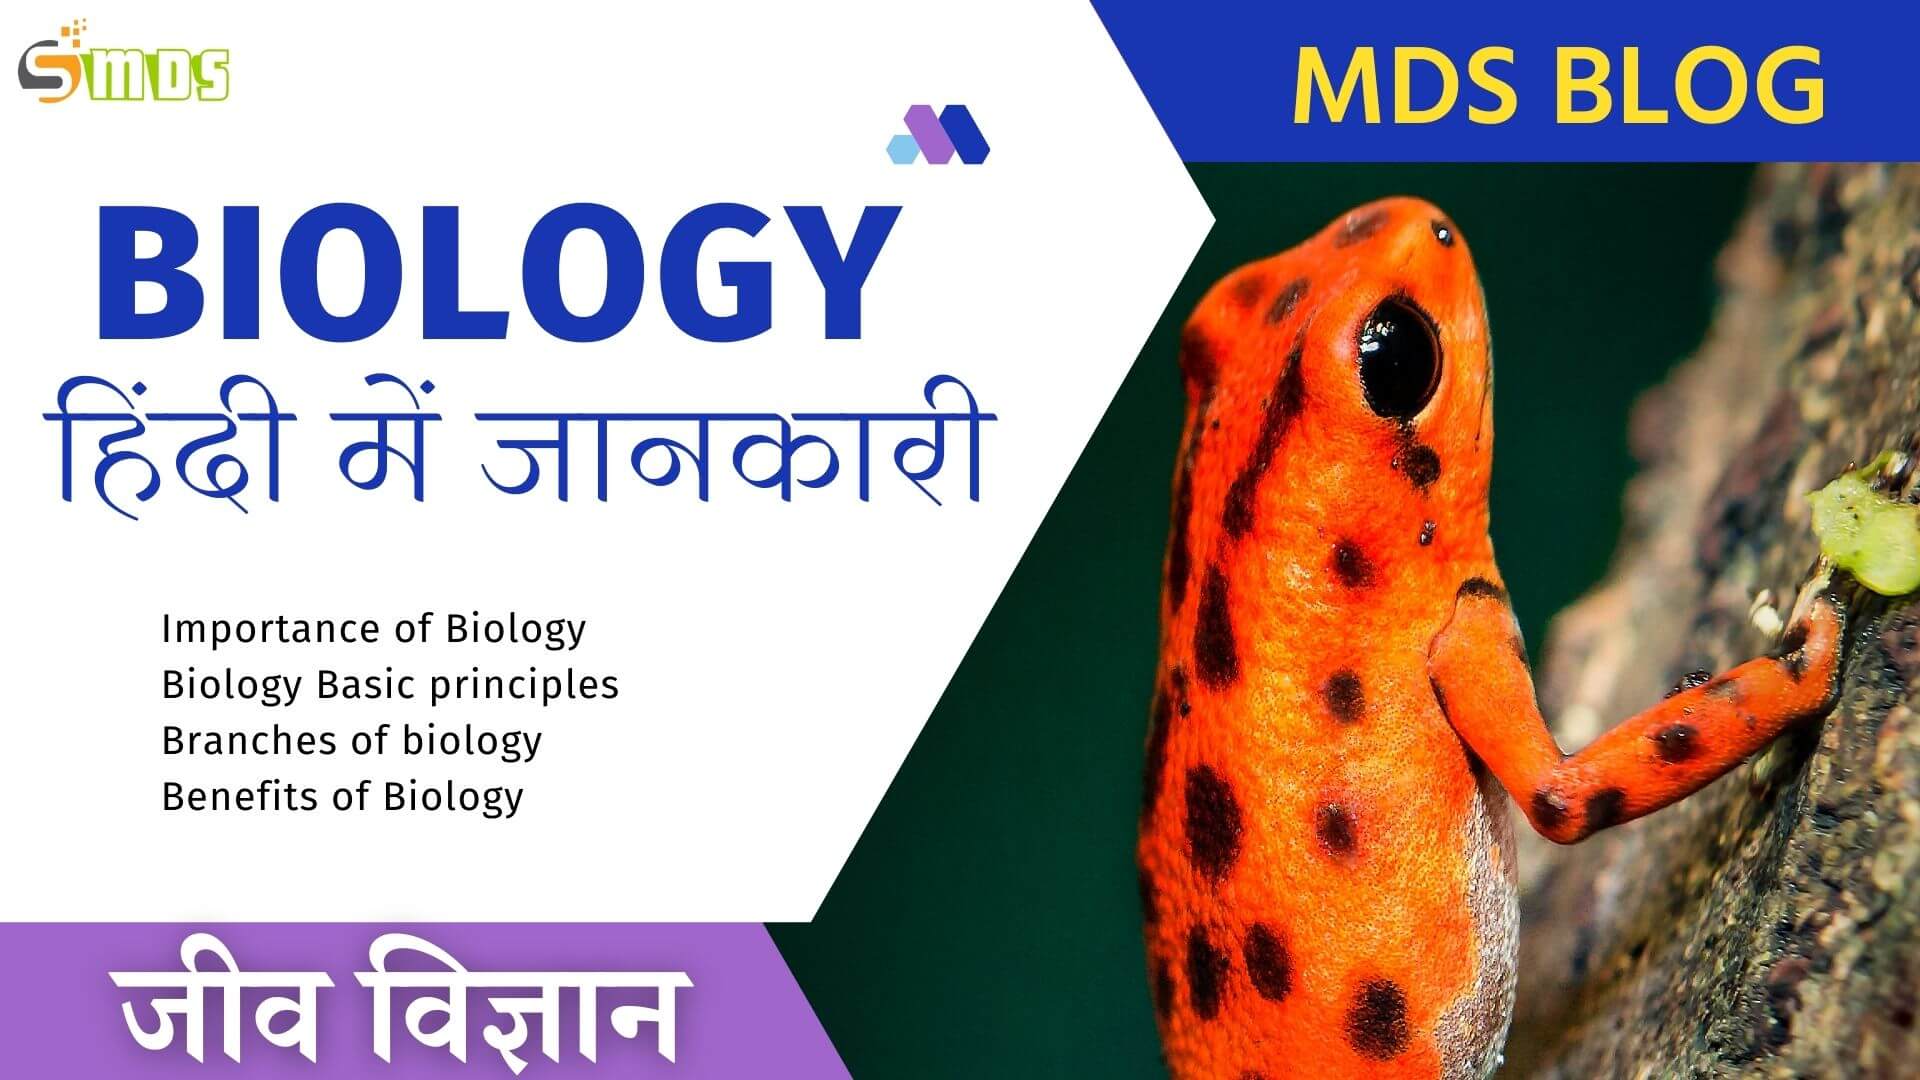 जीव विज्ञान (बायोलॉजी) क्या है - What is Biology in Hindi, Biology meaning in hindi, जीव विज्ञान की परिभाषा